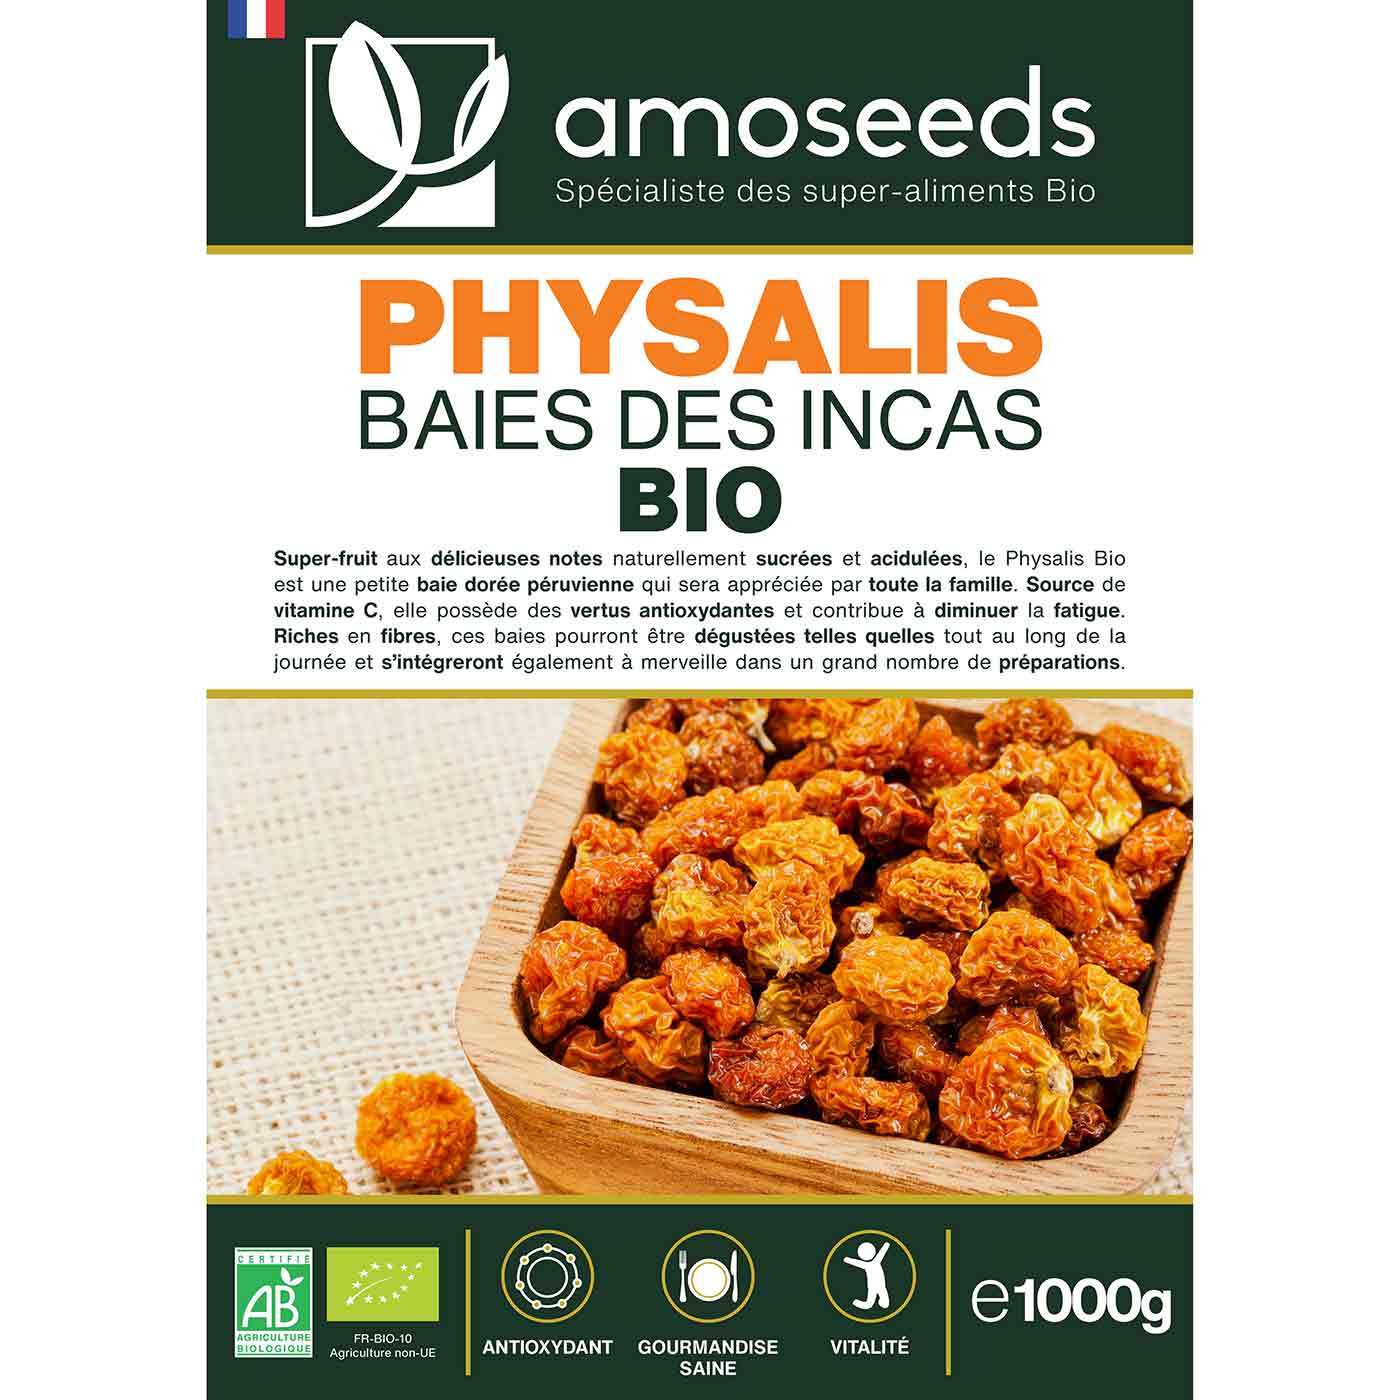 Physalis baies incas bio 1KG amoseeds specialiste des super aliments bio